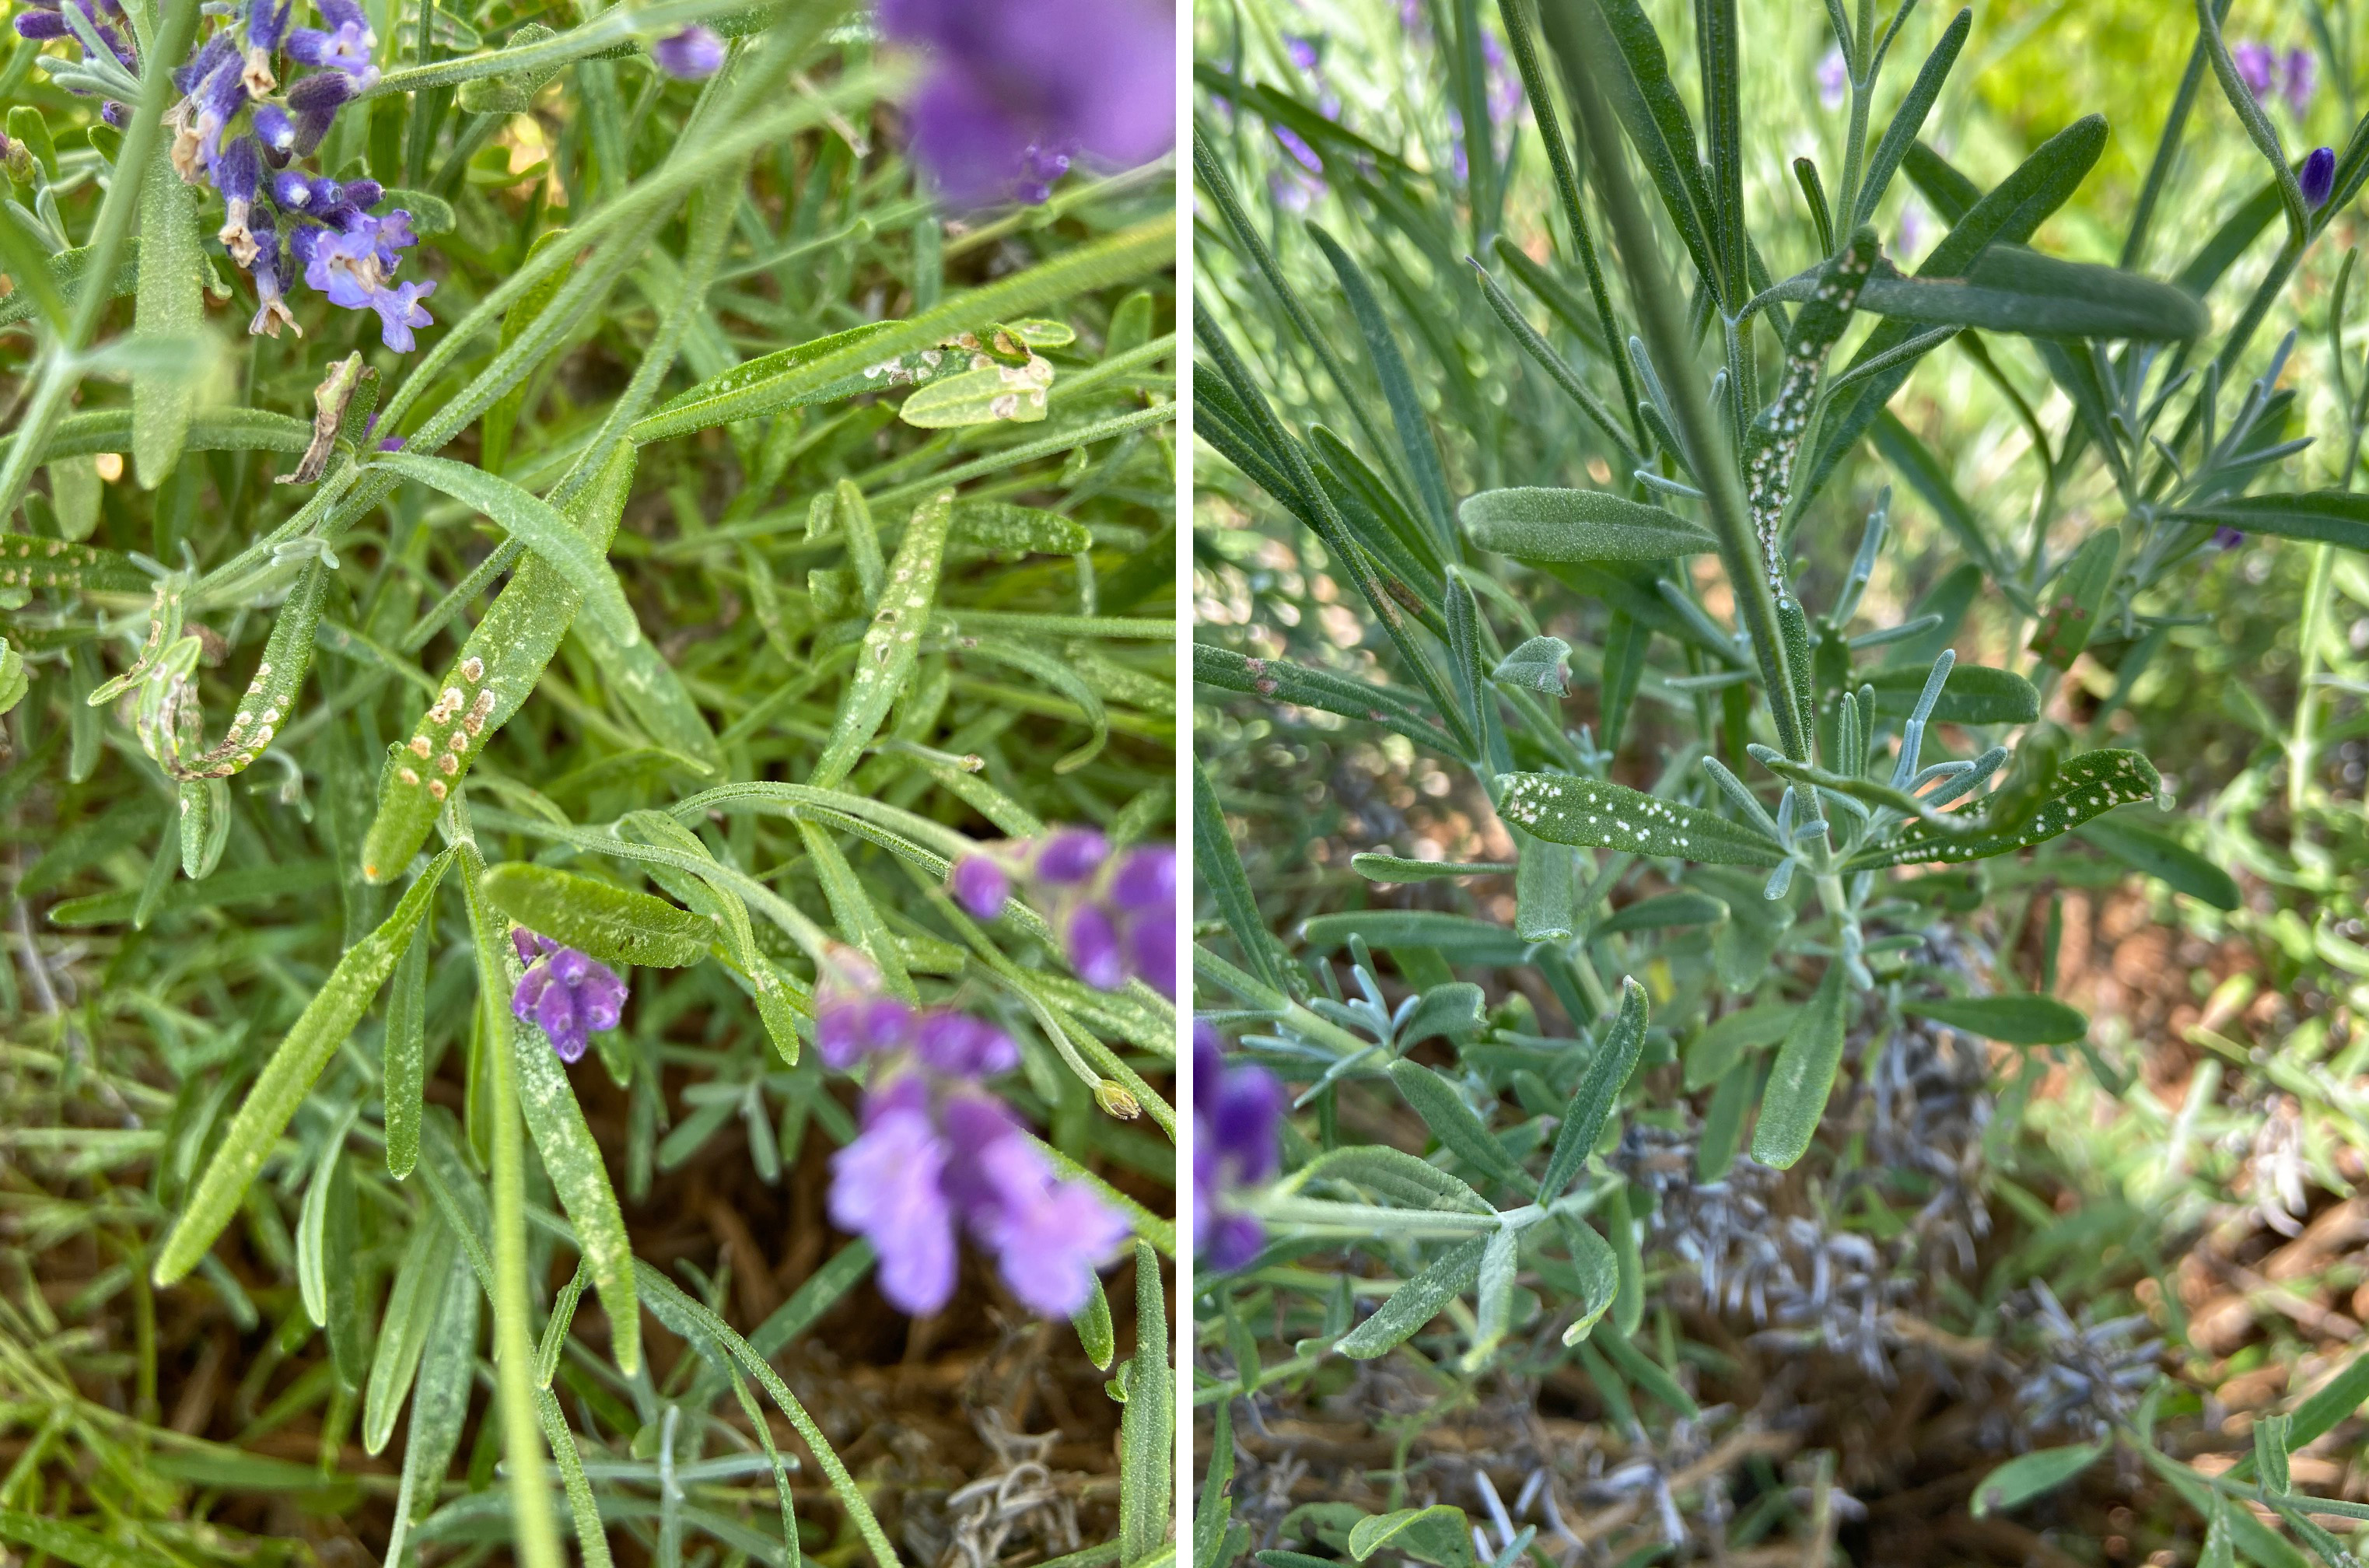 Fourlined plant bug damage on lavender